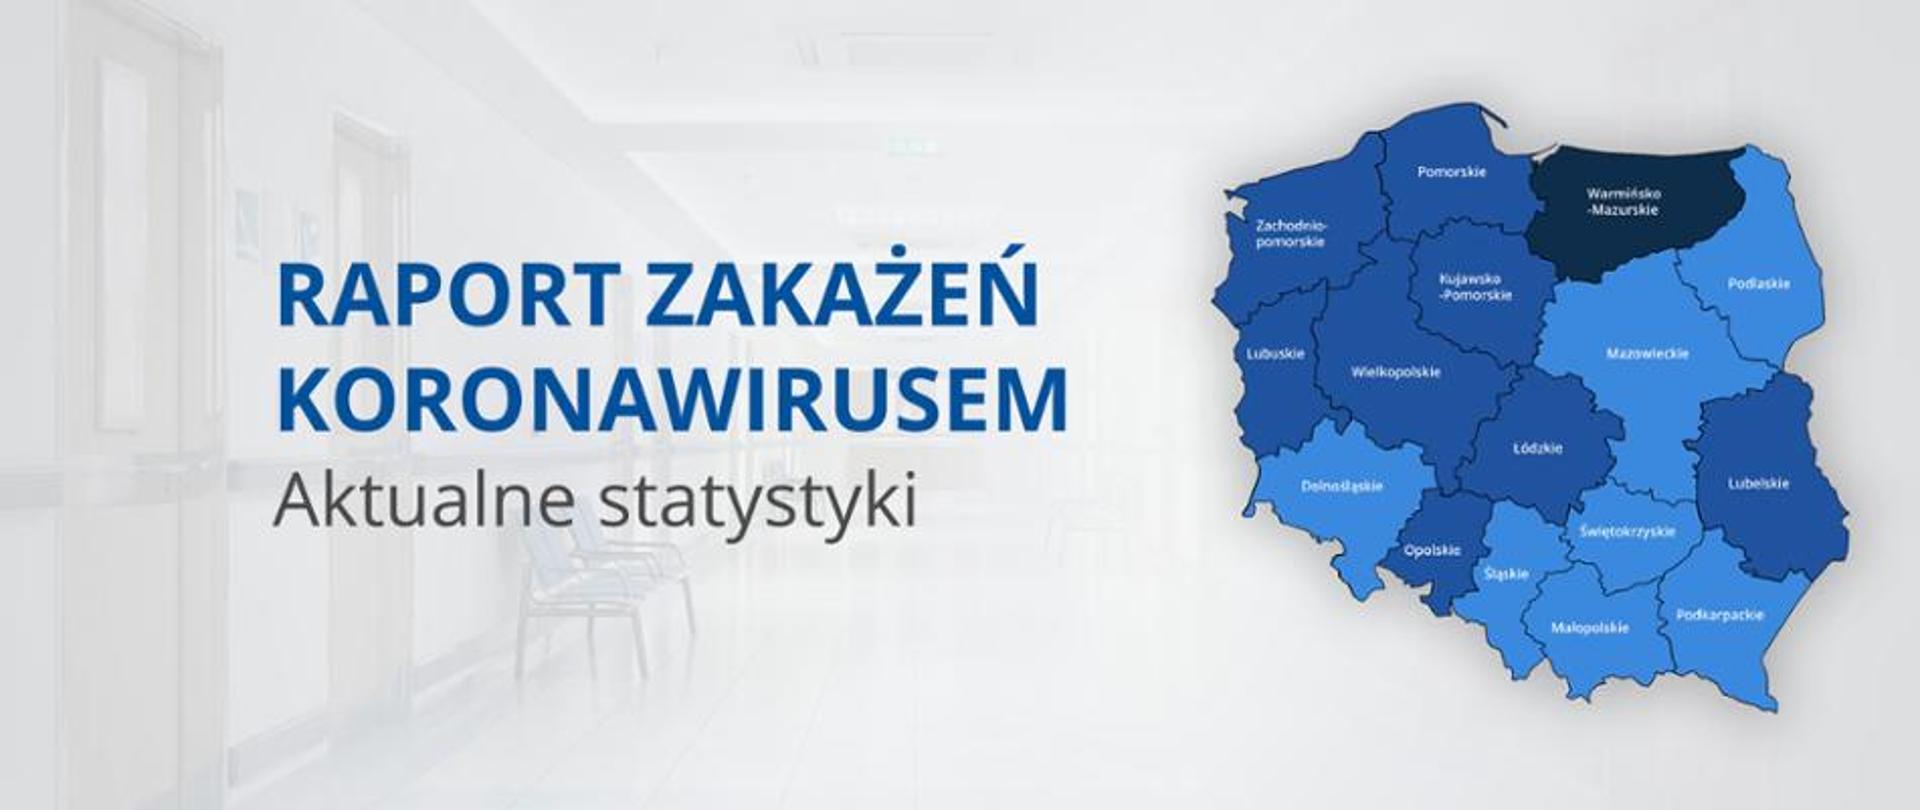 Raport zakażeń koronawirusem - Aktualne statystyki. Niebieska Mapa Polski w podziale na województwa.